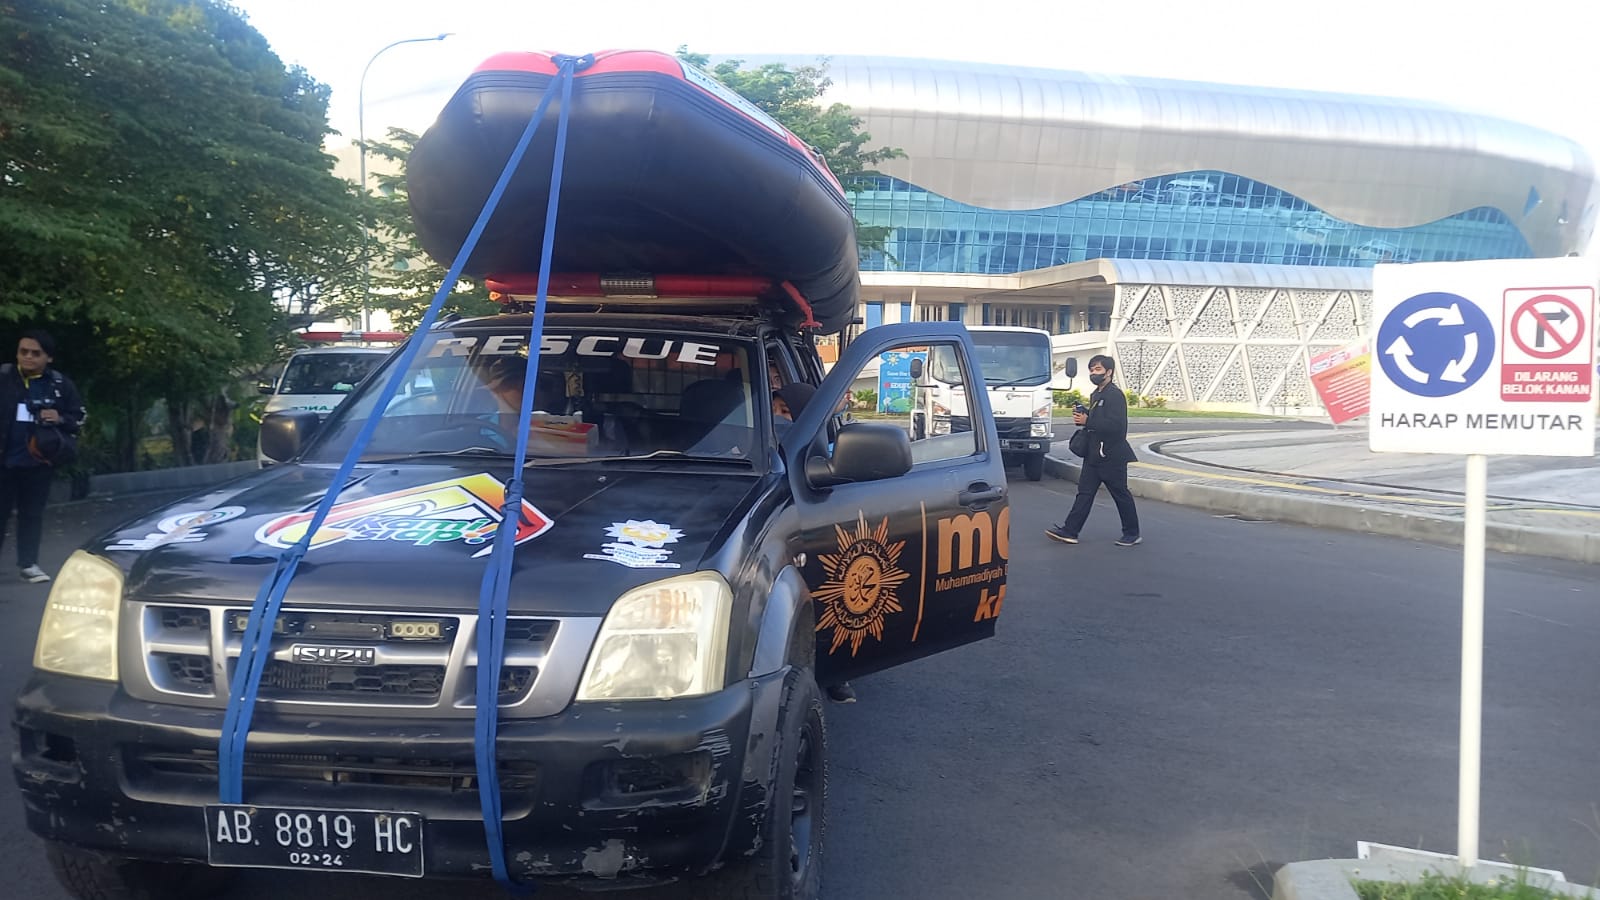 Sejumlah mobil emergency teraprkir di depan Gedung Edutorium UMS, pada Rabu (26/10/2022) saat MDMC Jawa Tengah menyusun rencana kntijensi banjir di seluruh area Muktamar ke 48.